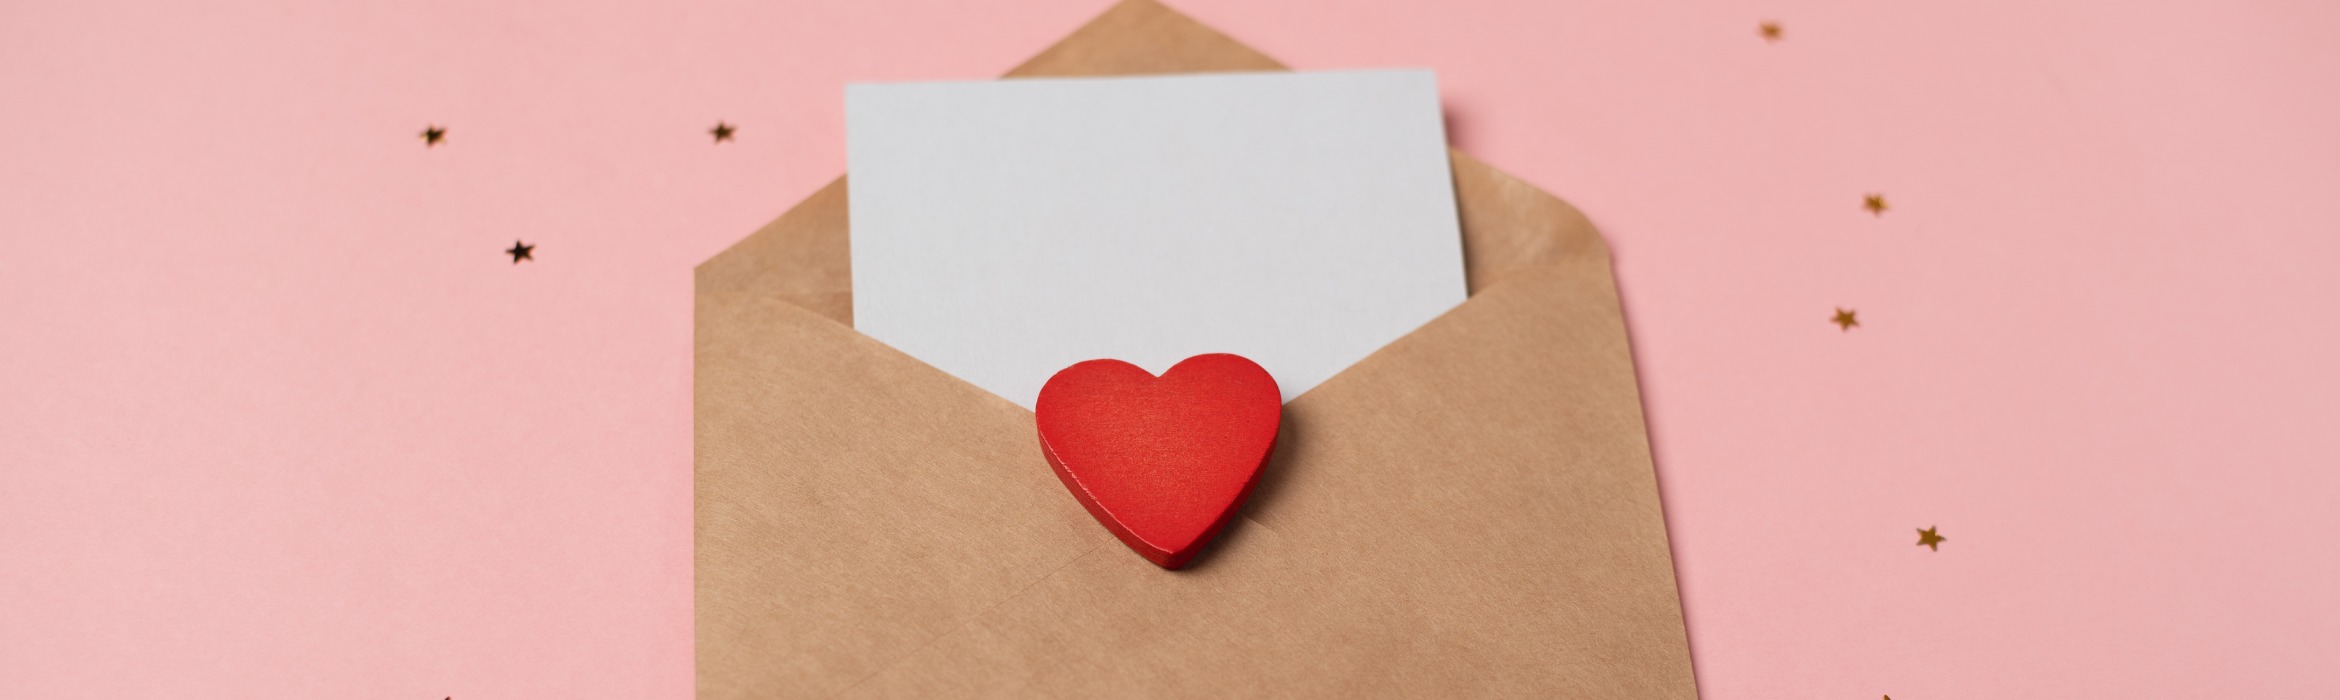 Envelop met hart ter illustratie van klantrelatie verbeteren